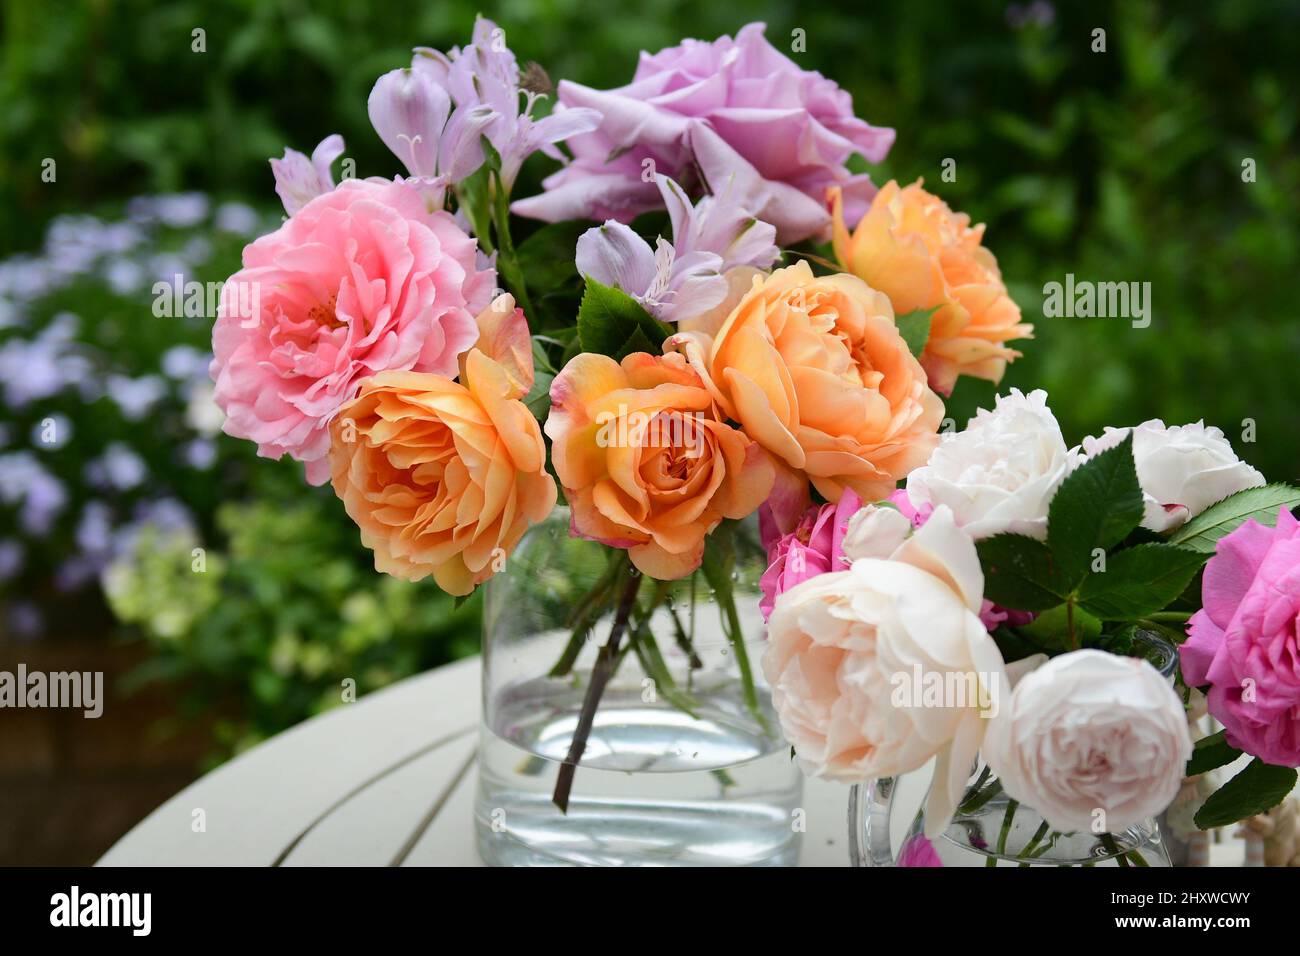 Gros plan d'un beau bouquet de roses anglaises dans un vase Banque D'Images